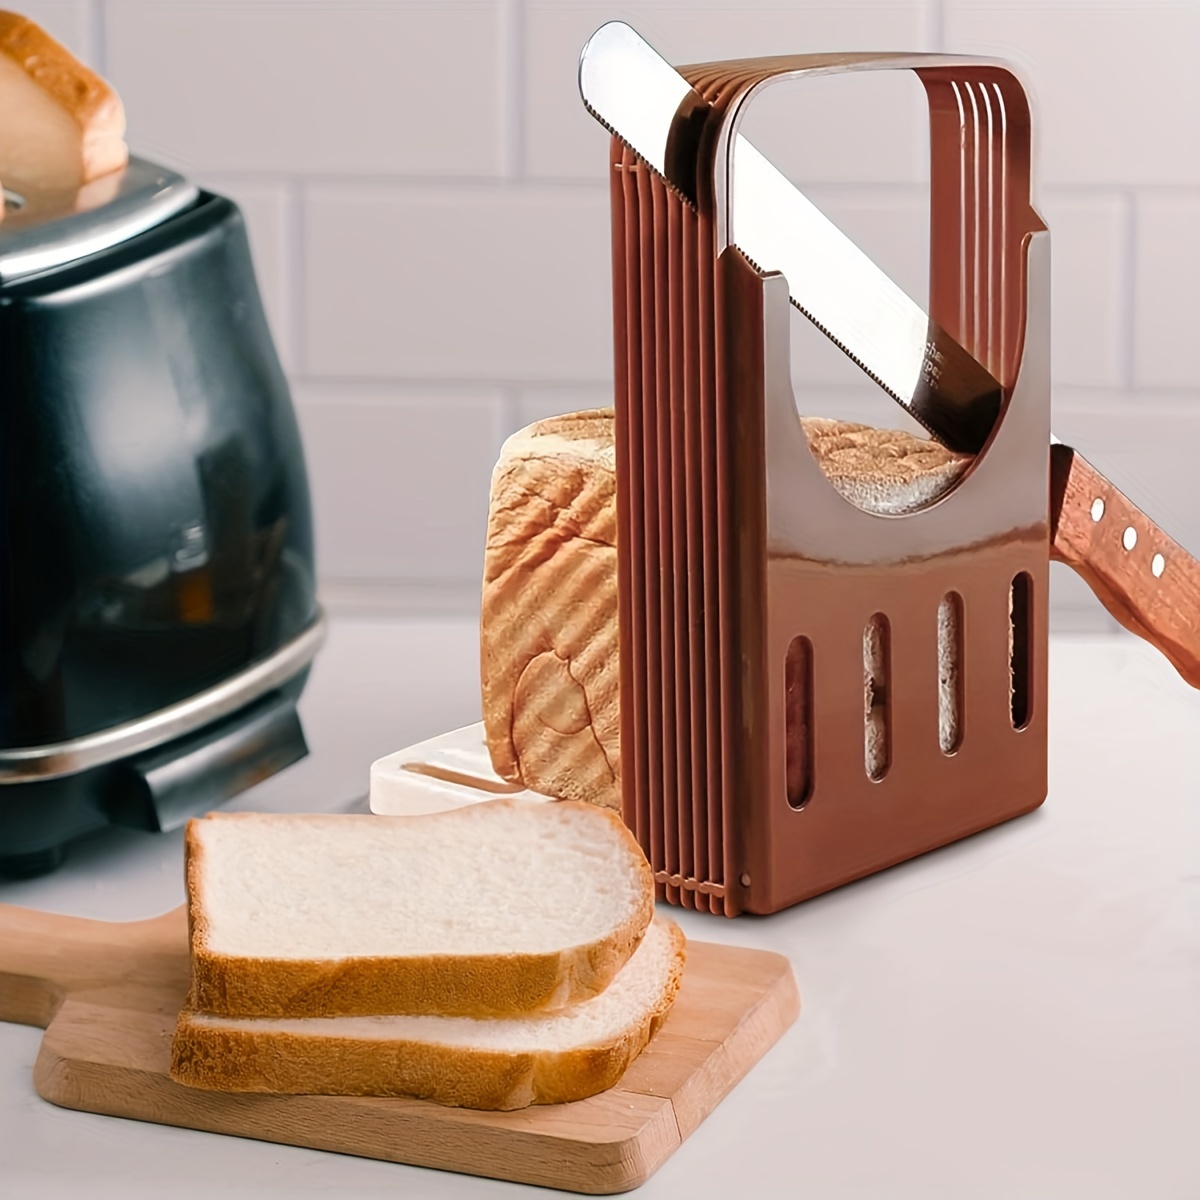 Plastic Bread Slicer for Homemade Bagel Loaf/Toast, Foldable Bread